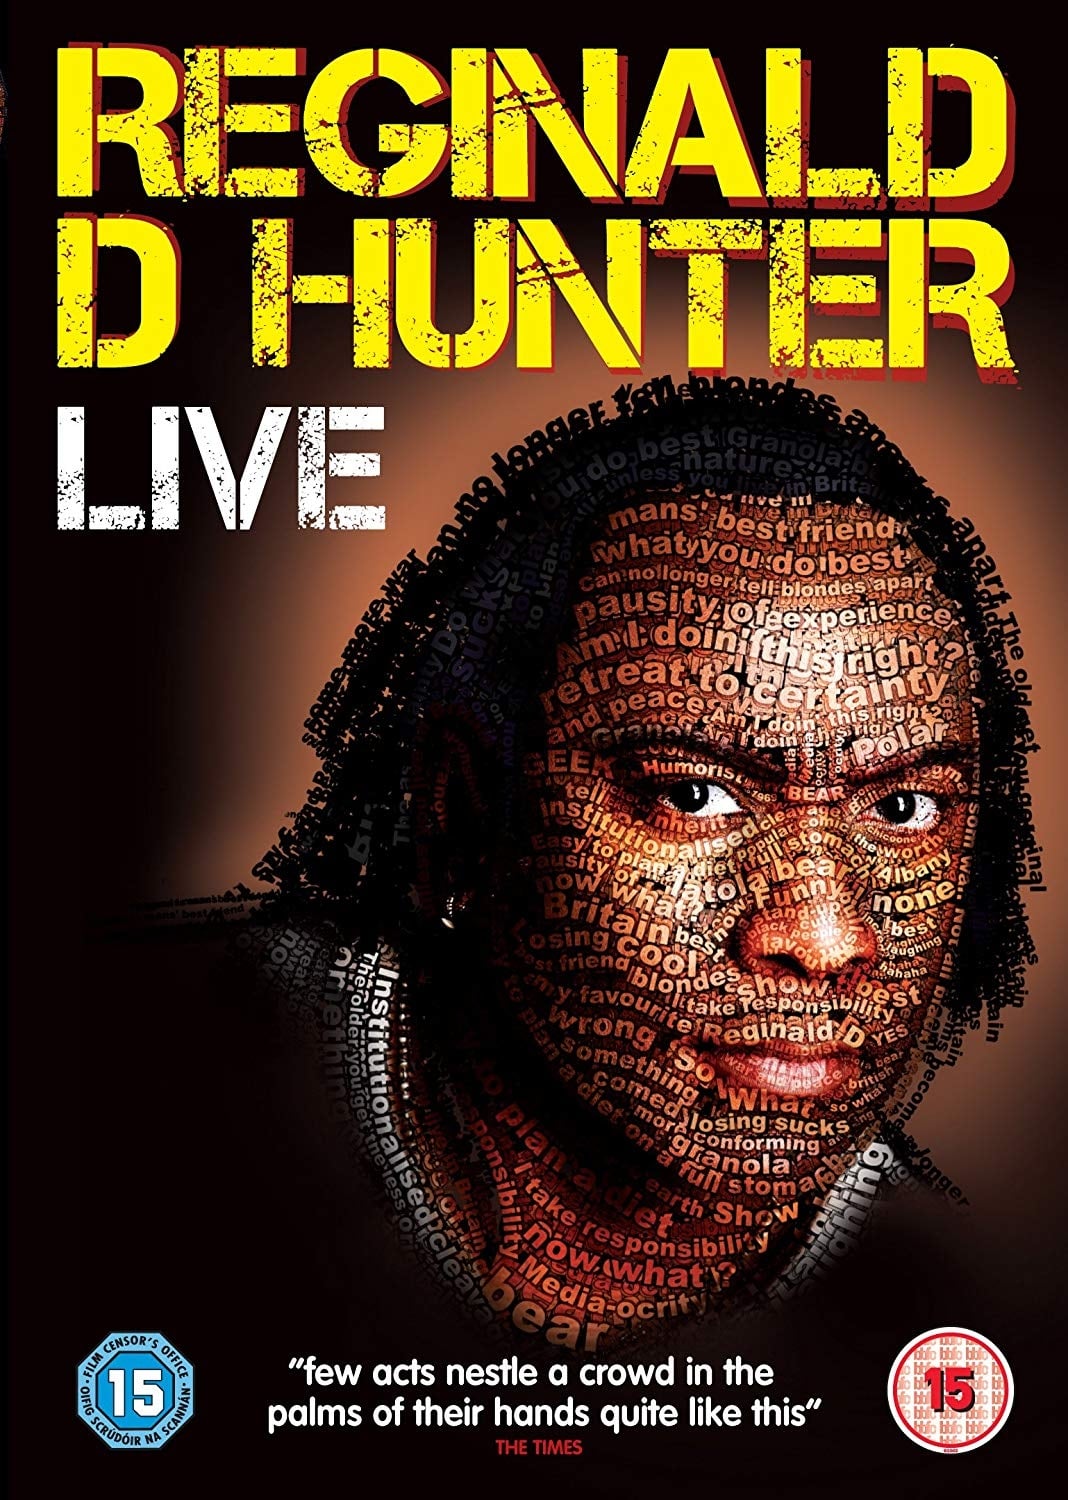 Reginald D Hunter Live